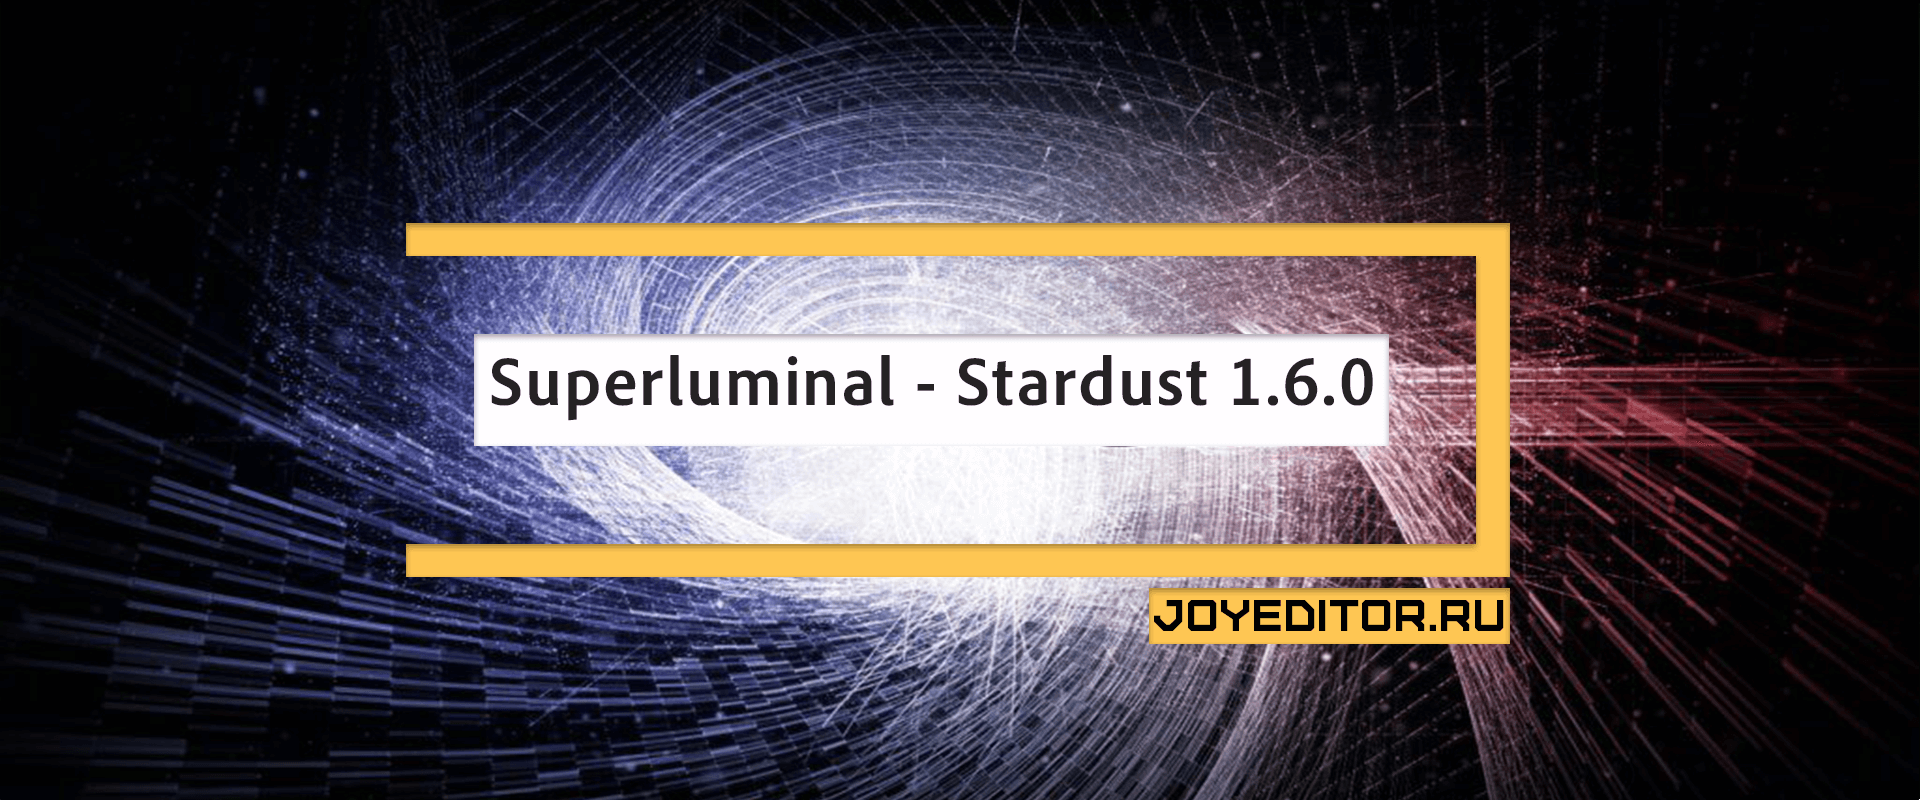 Superluminal - Stardust 1.6.0